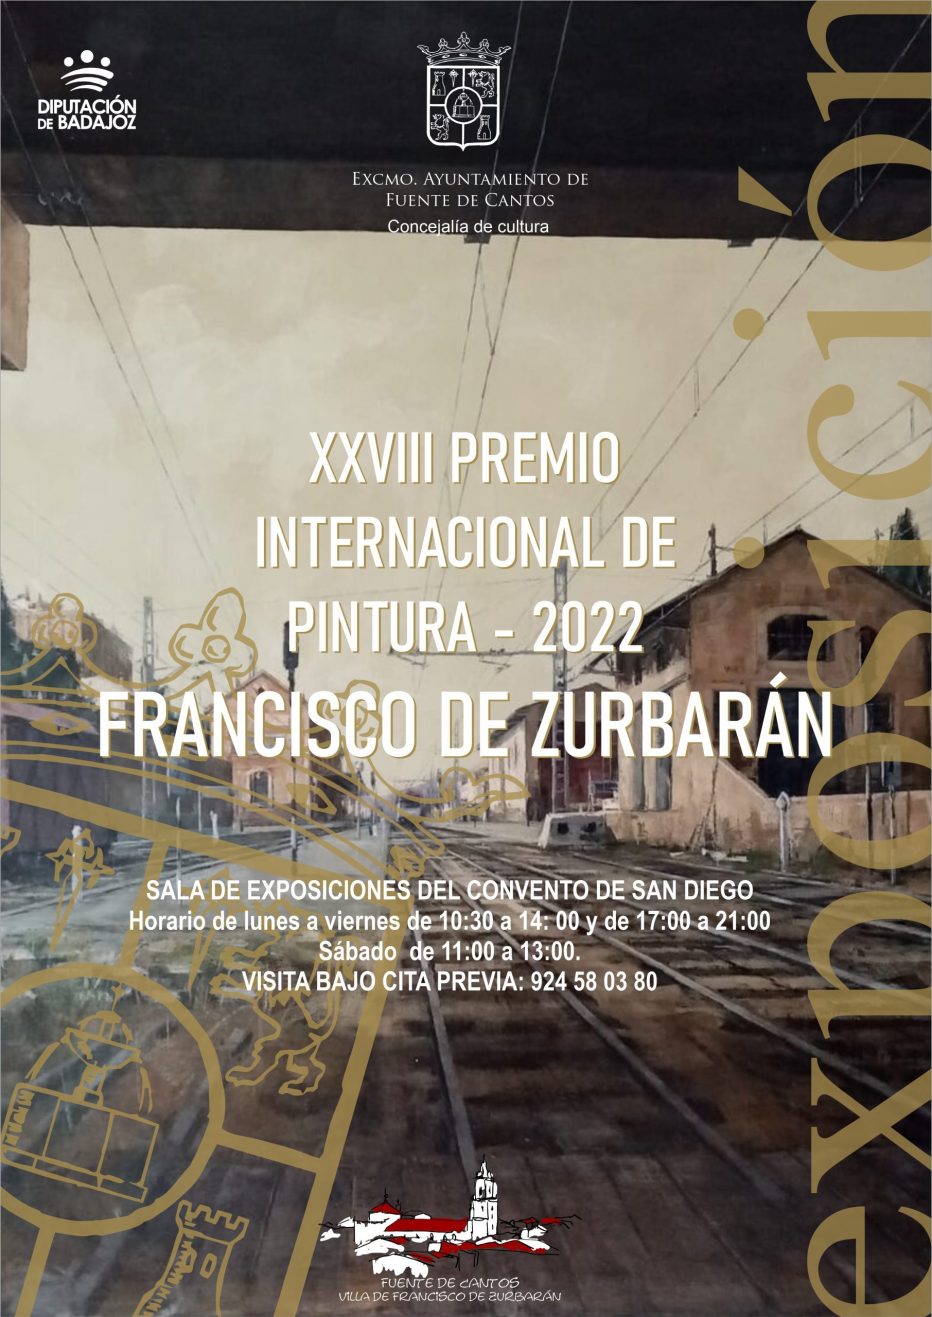 XXVIII PREMIO INTERNACIONAL DE PINTURA FRANCISCO DE ZURBARÁN